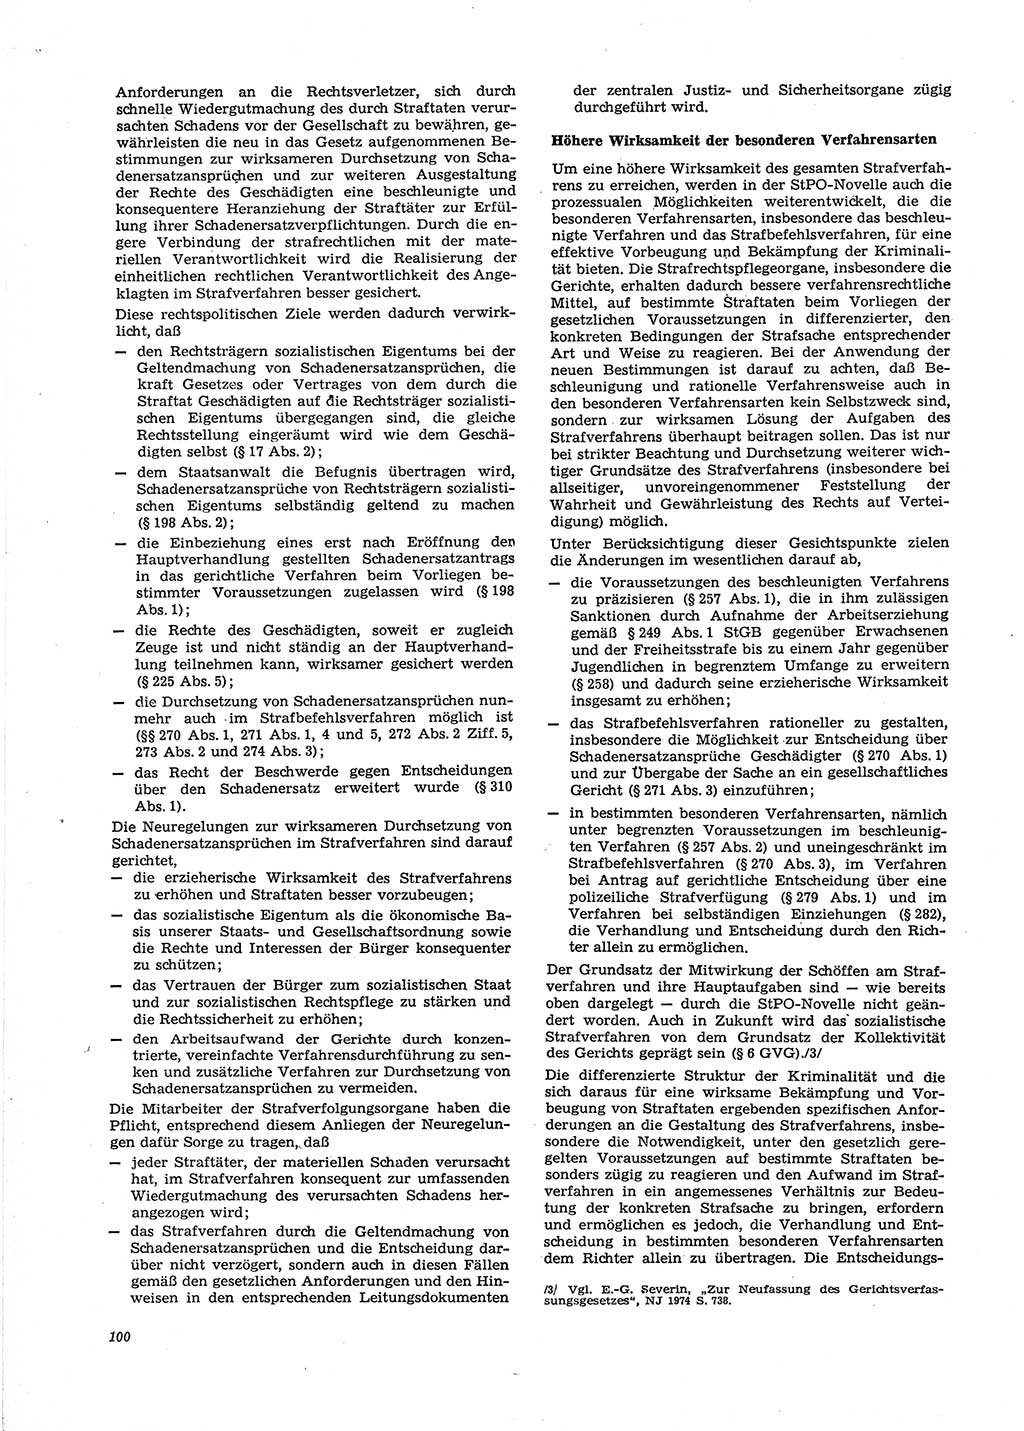 Neue Justiz (NJ), Zeitschrift für Recht und Rechtswissenschaft [Deutsche Demokratische Republik (DDR)], 29. Jahrgang 1975, Seite 100 (NJ DDR 1975, S. 100)